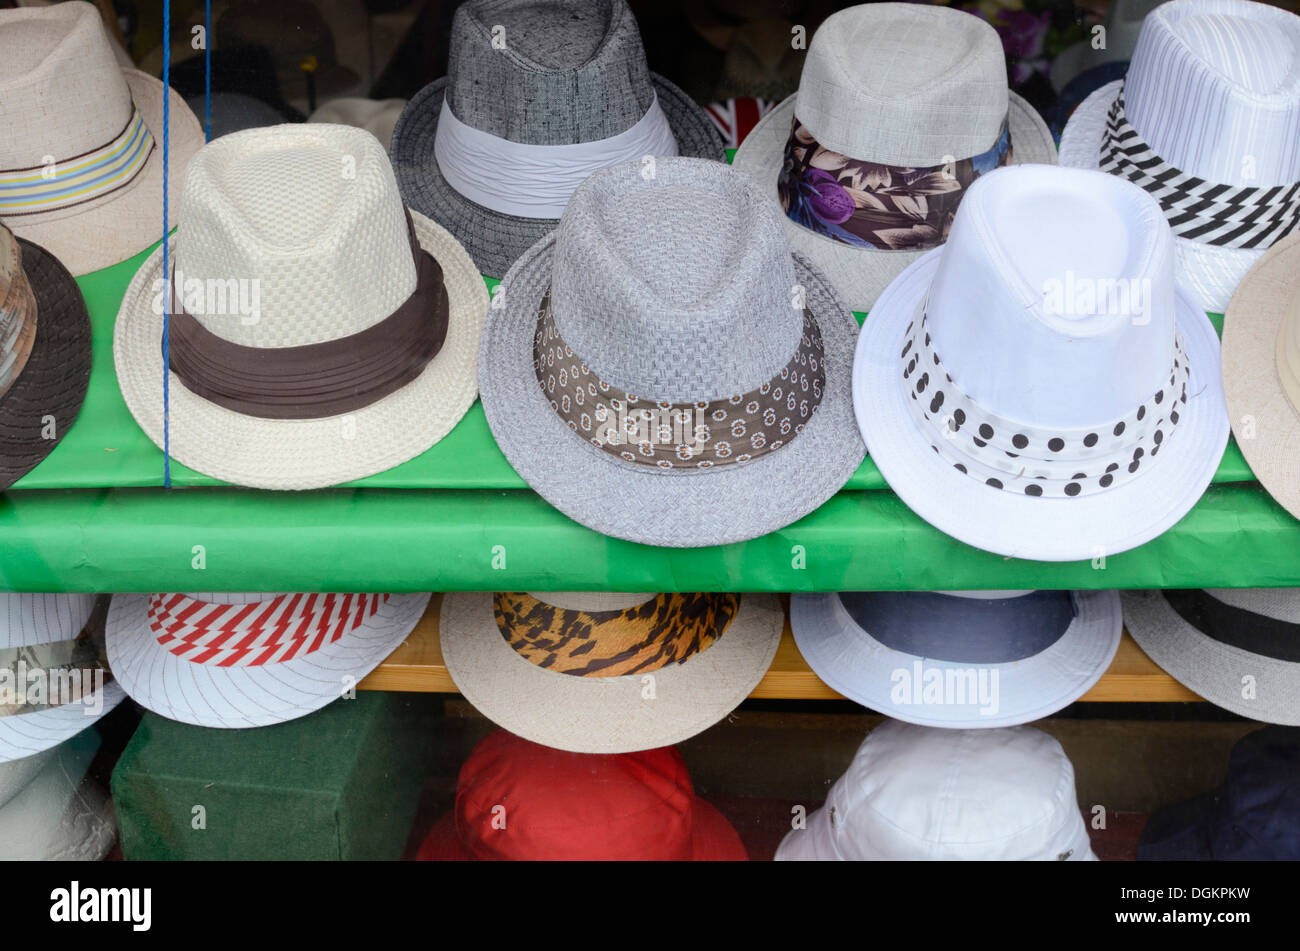 Cappelli trilby immagini e fotografie stock ad alta risoluzione - Alamy